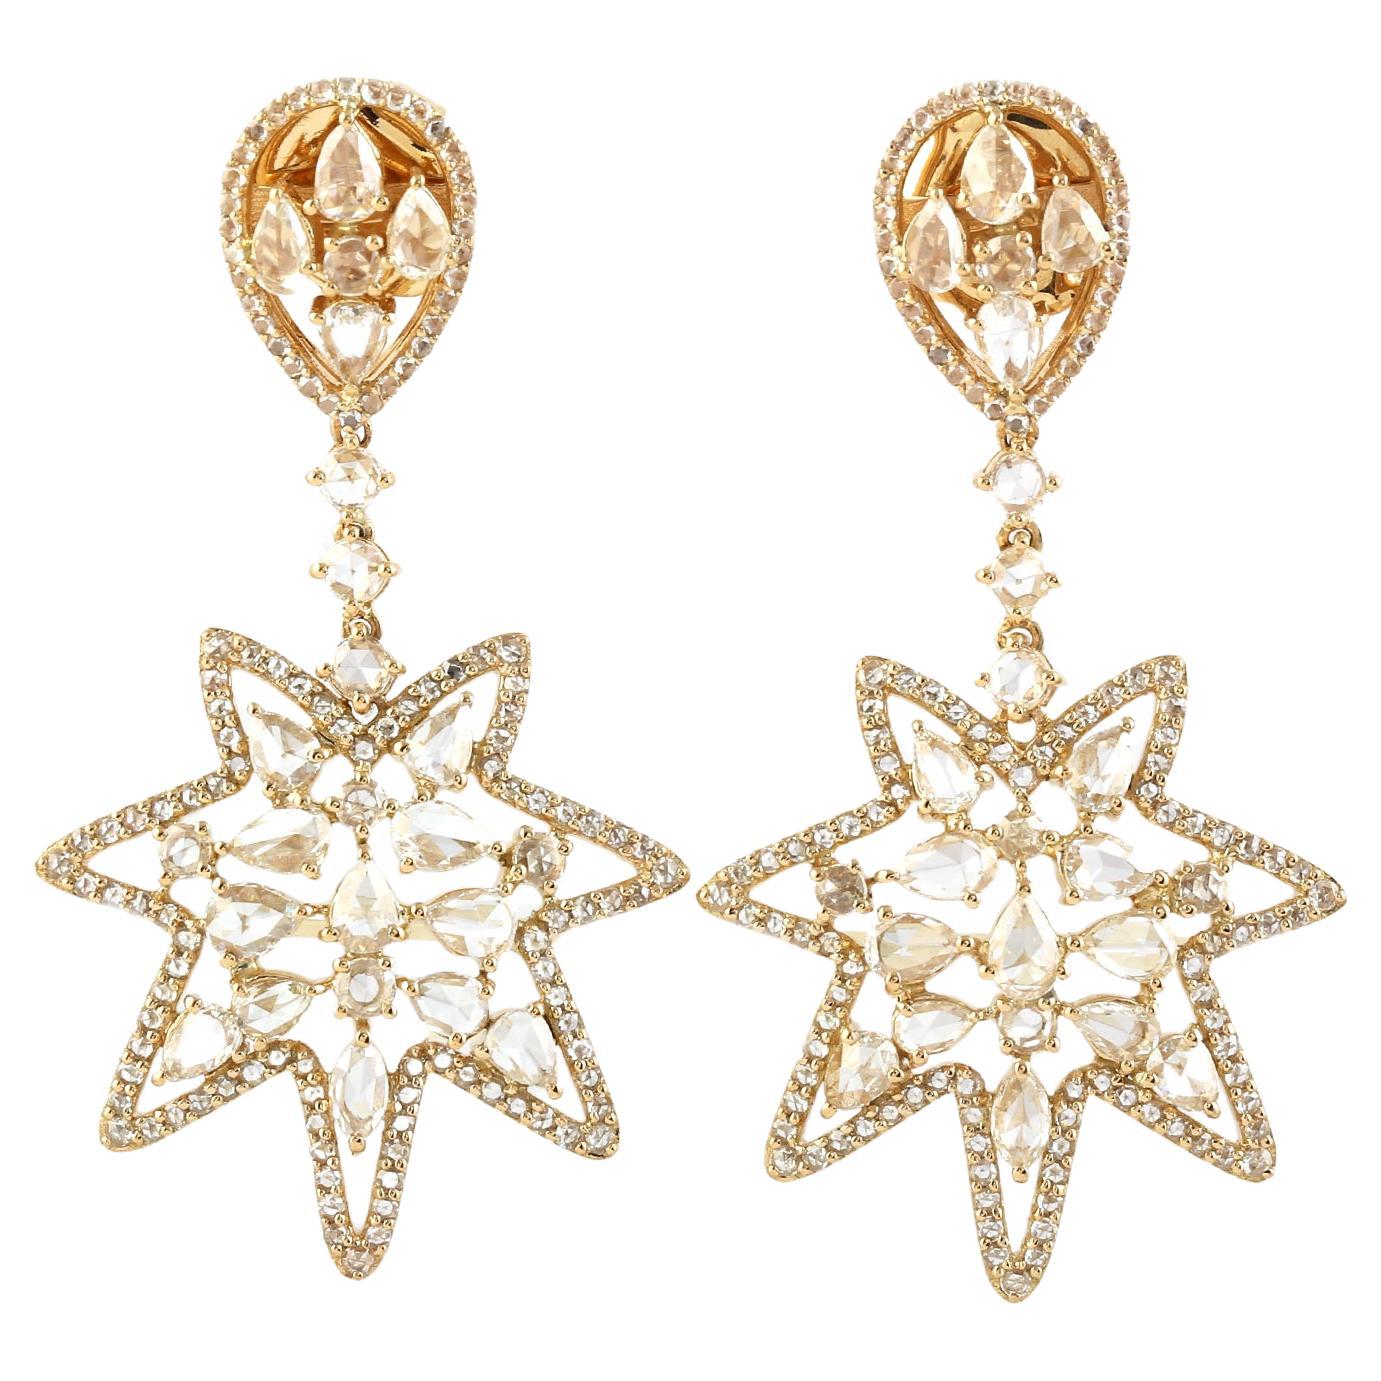 Boucles d'oreilles pendantes en or jaune 18k avec rosace en forme d'étoile